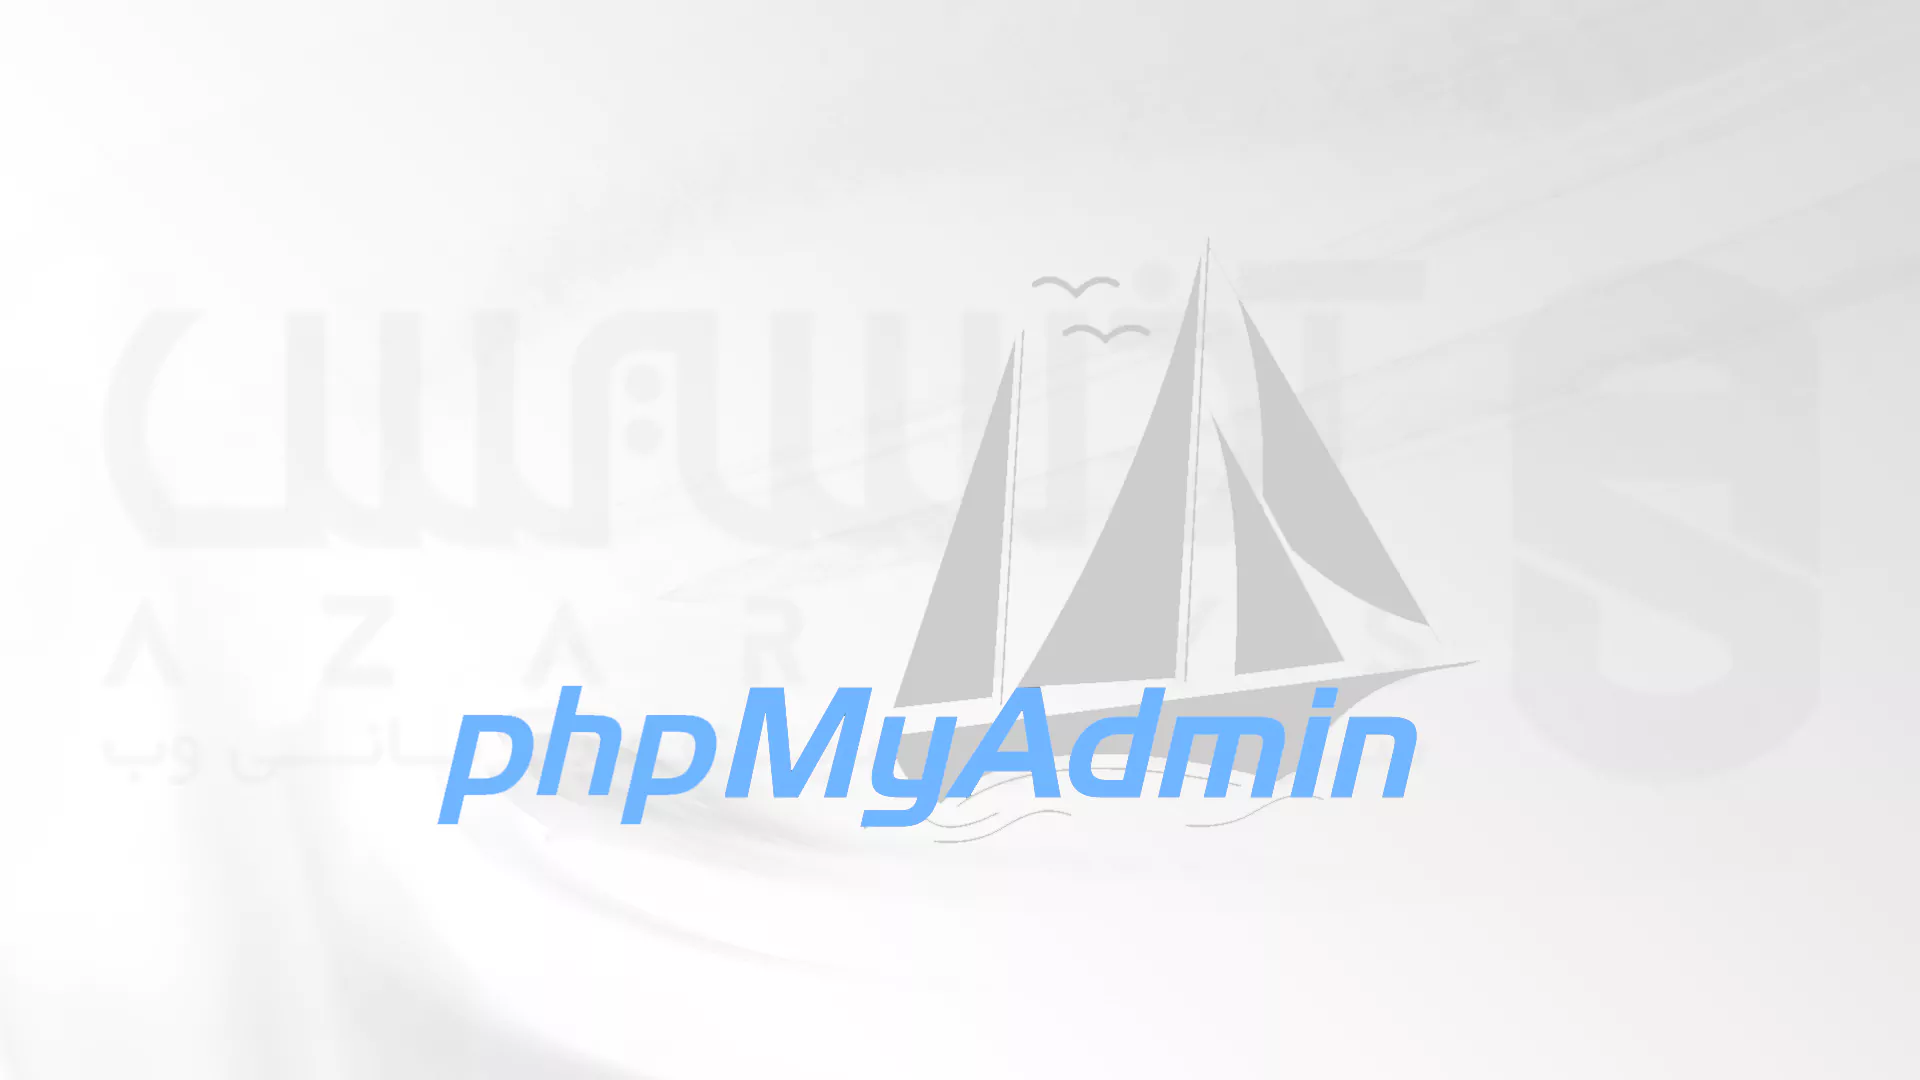 نحوه نصب PHPMyAdmin بر روی ویندوز 10